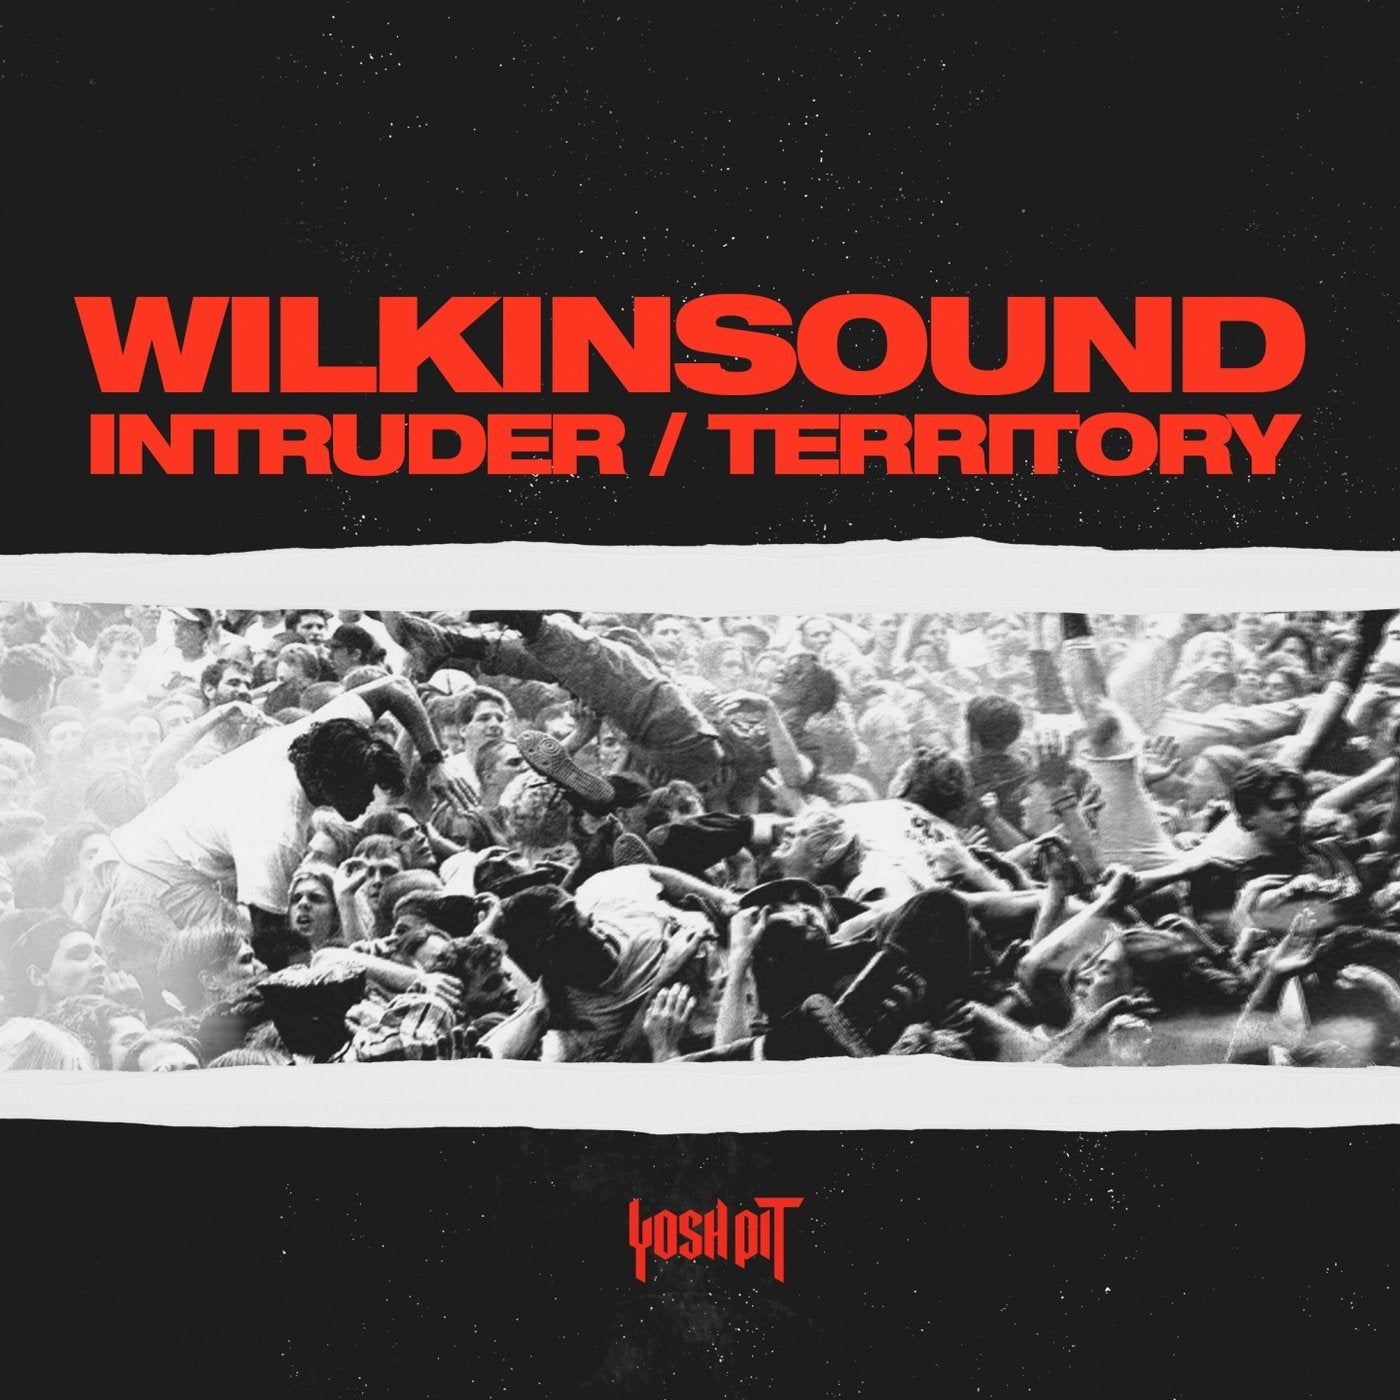 Intruder / Territory